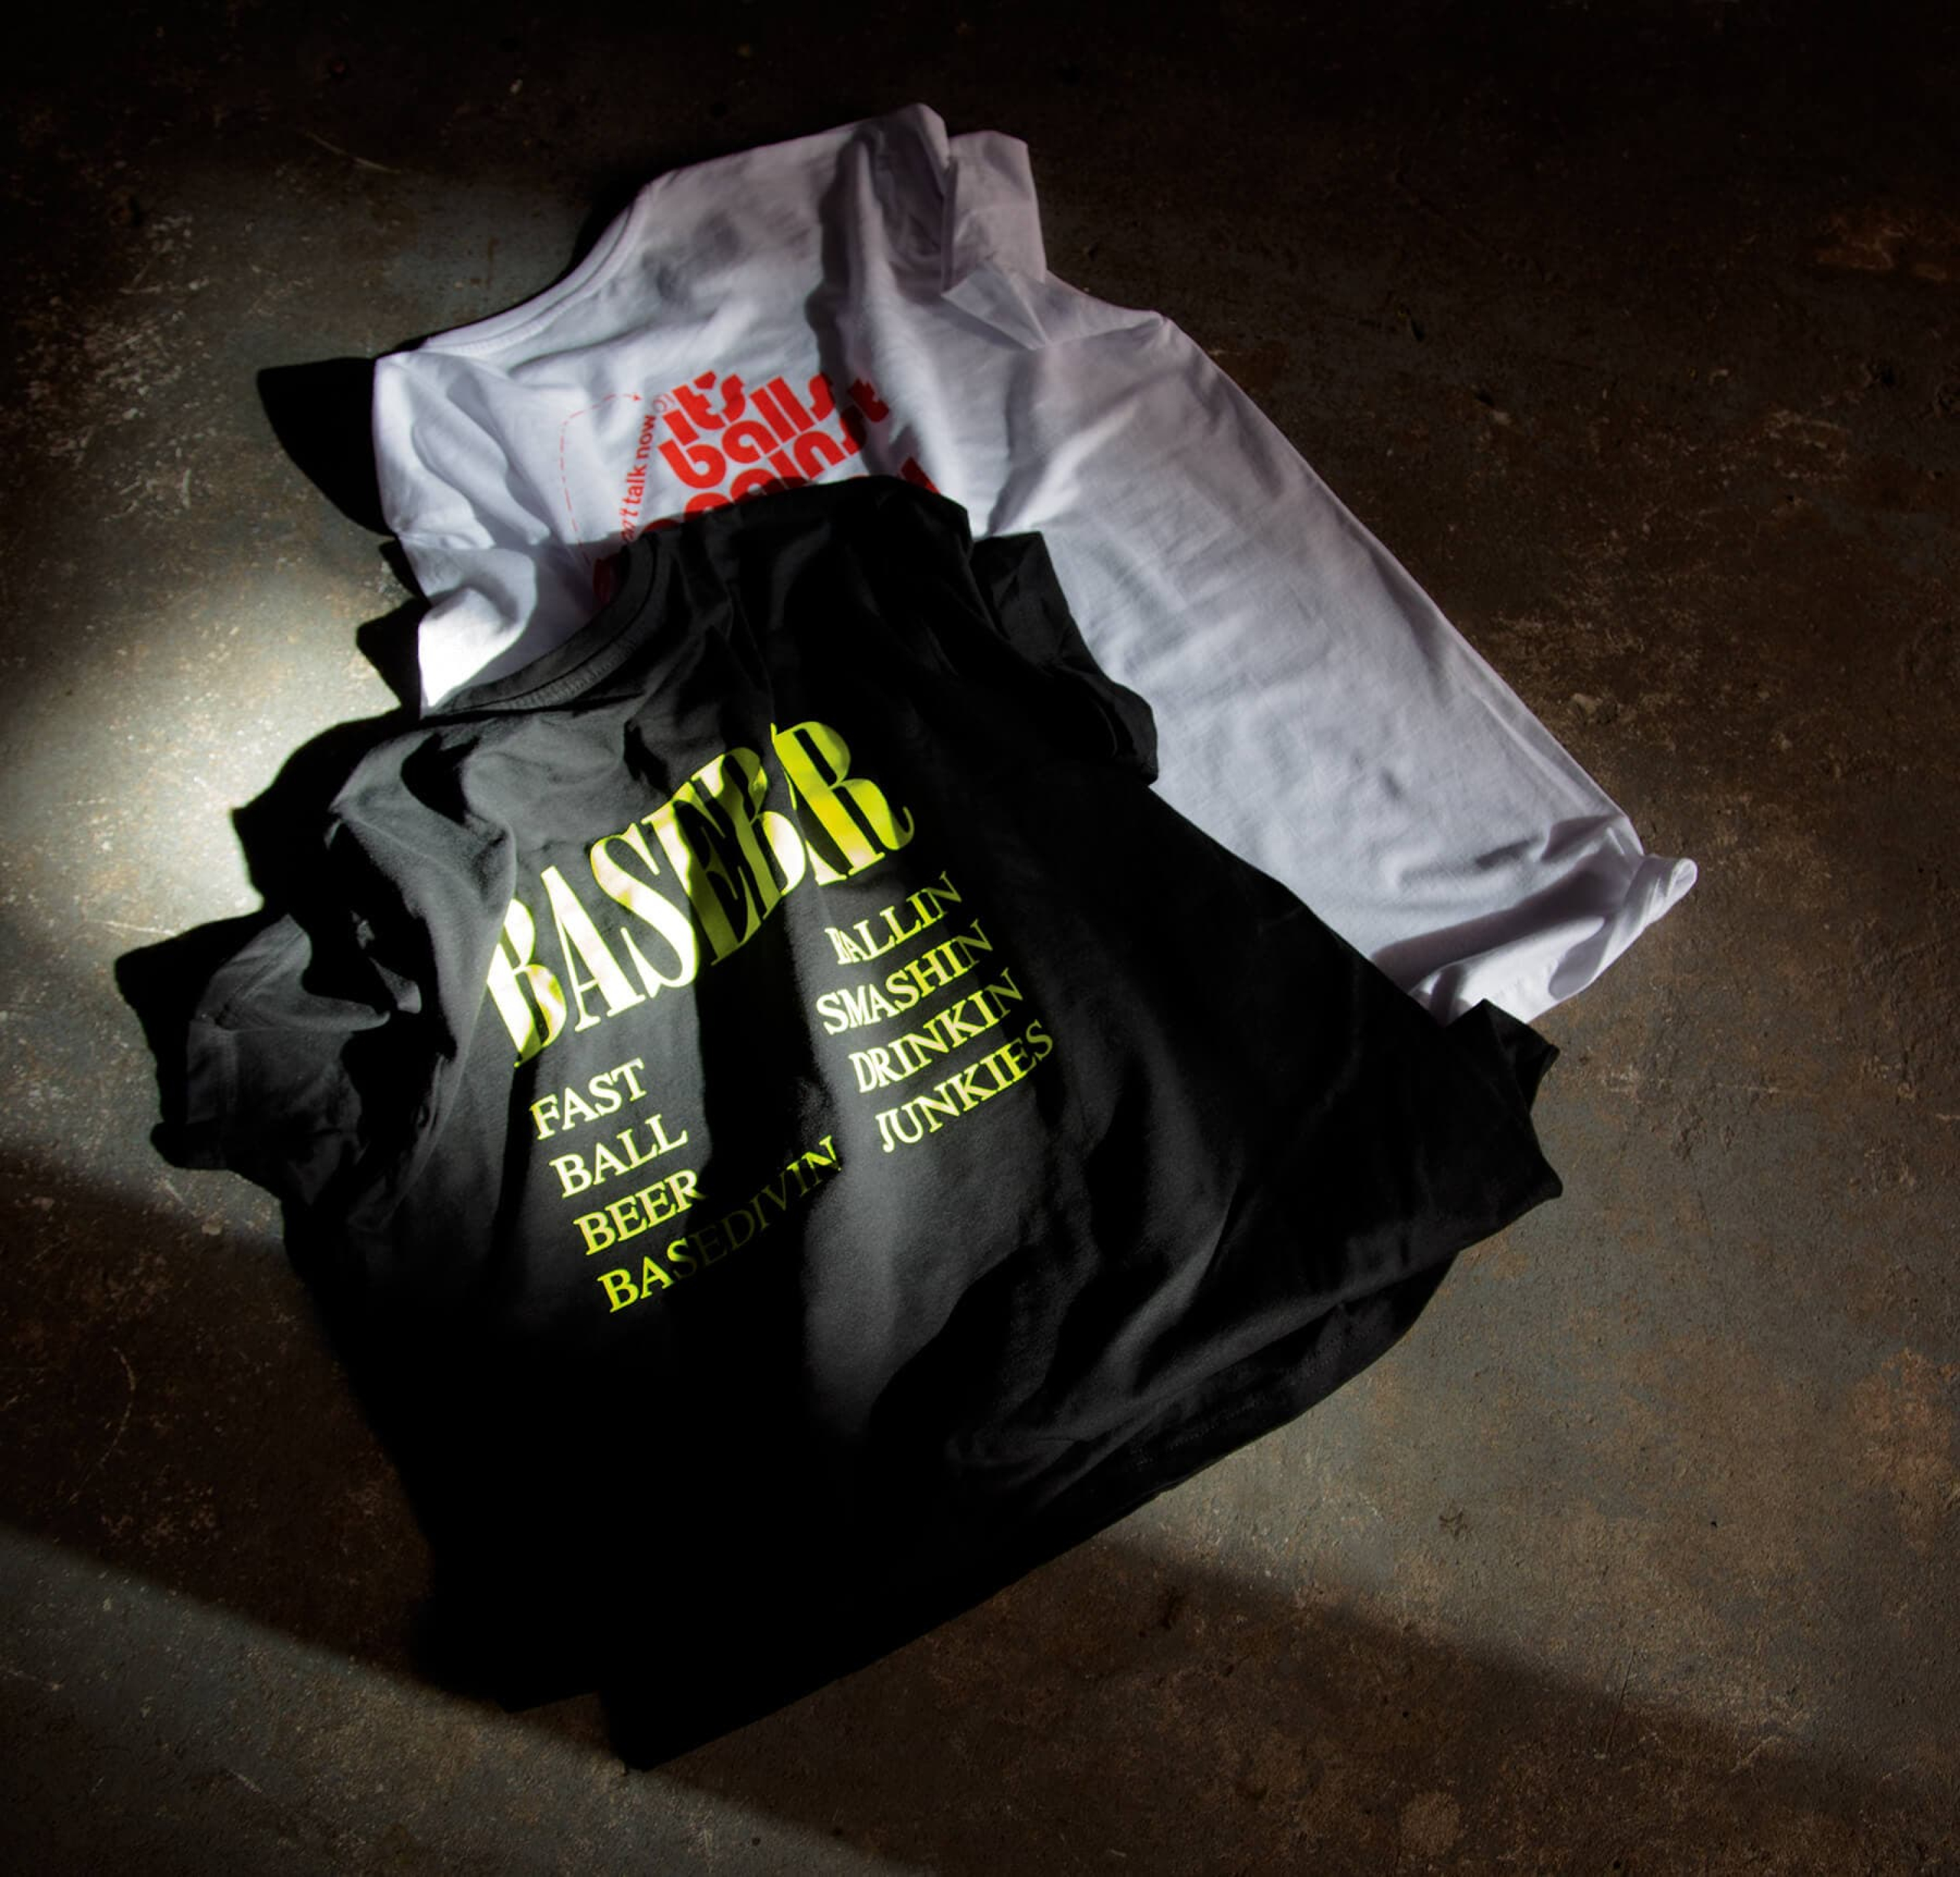 Base Bar T-shirts by Ensemble.